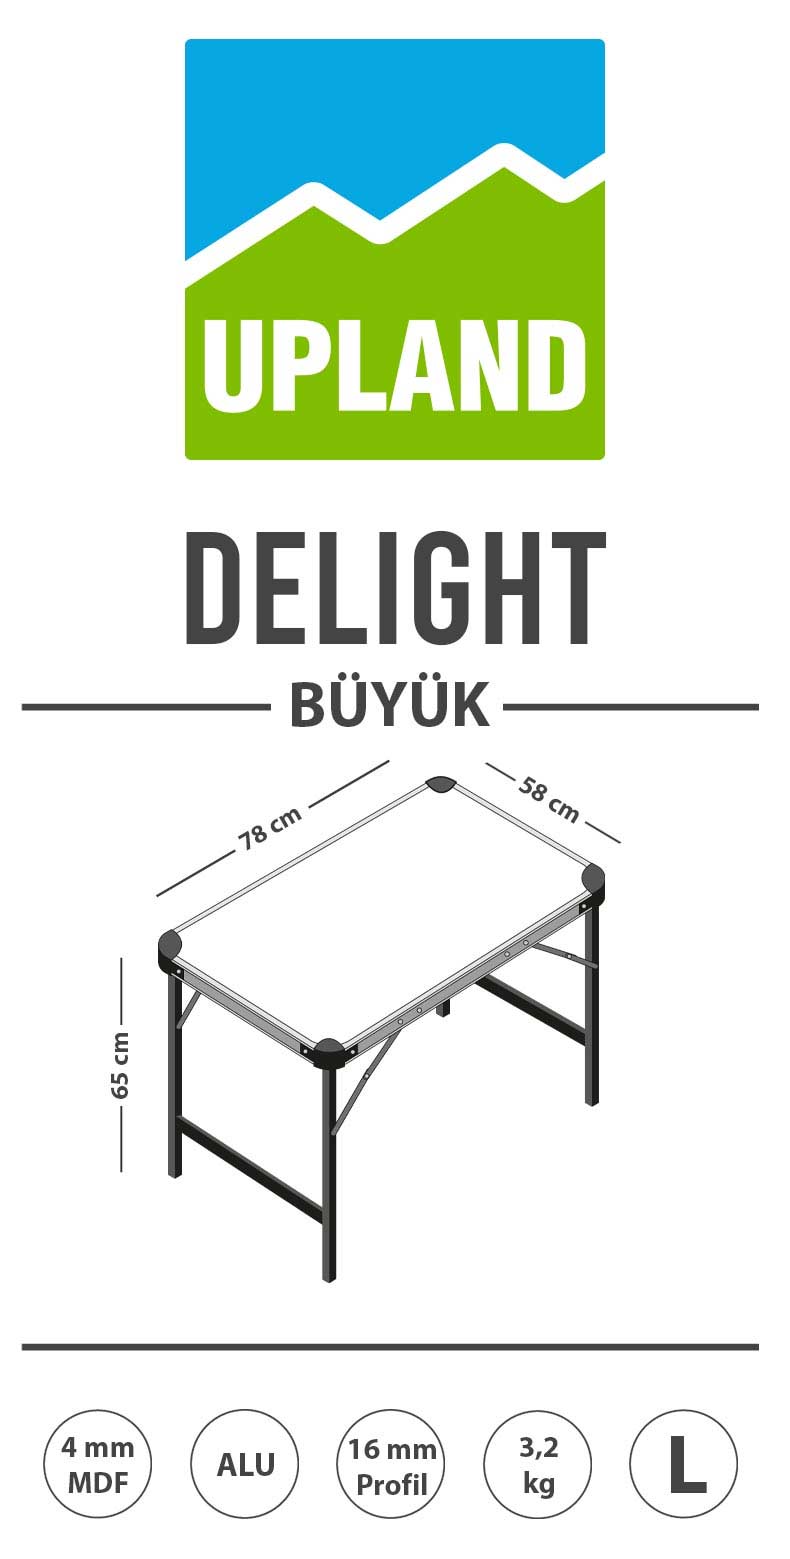 upland delight mdf katlanır masa ürün açıklama resmi